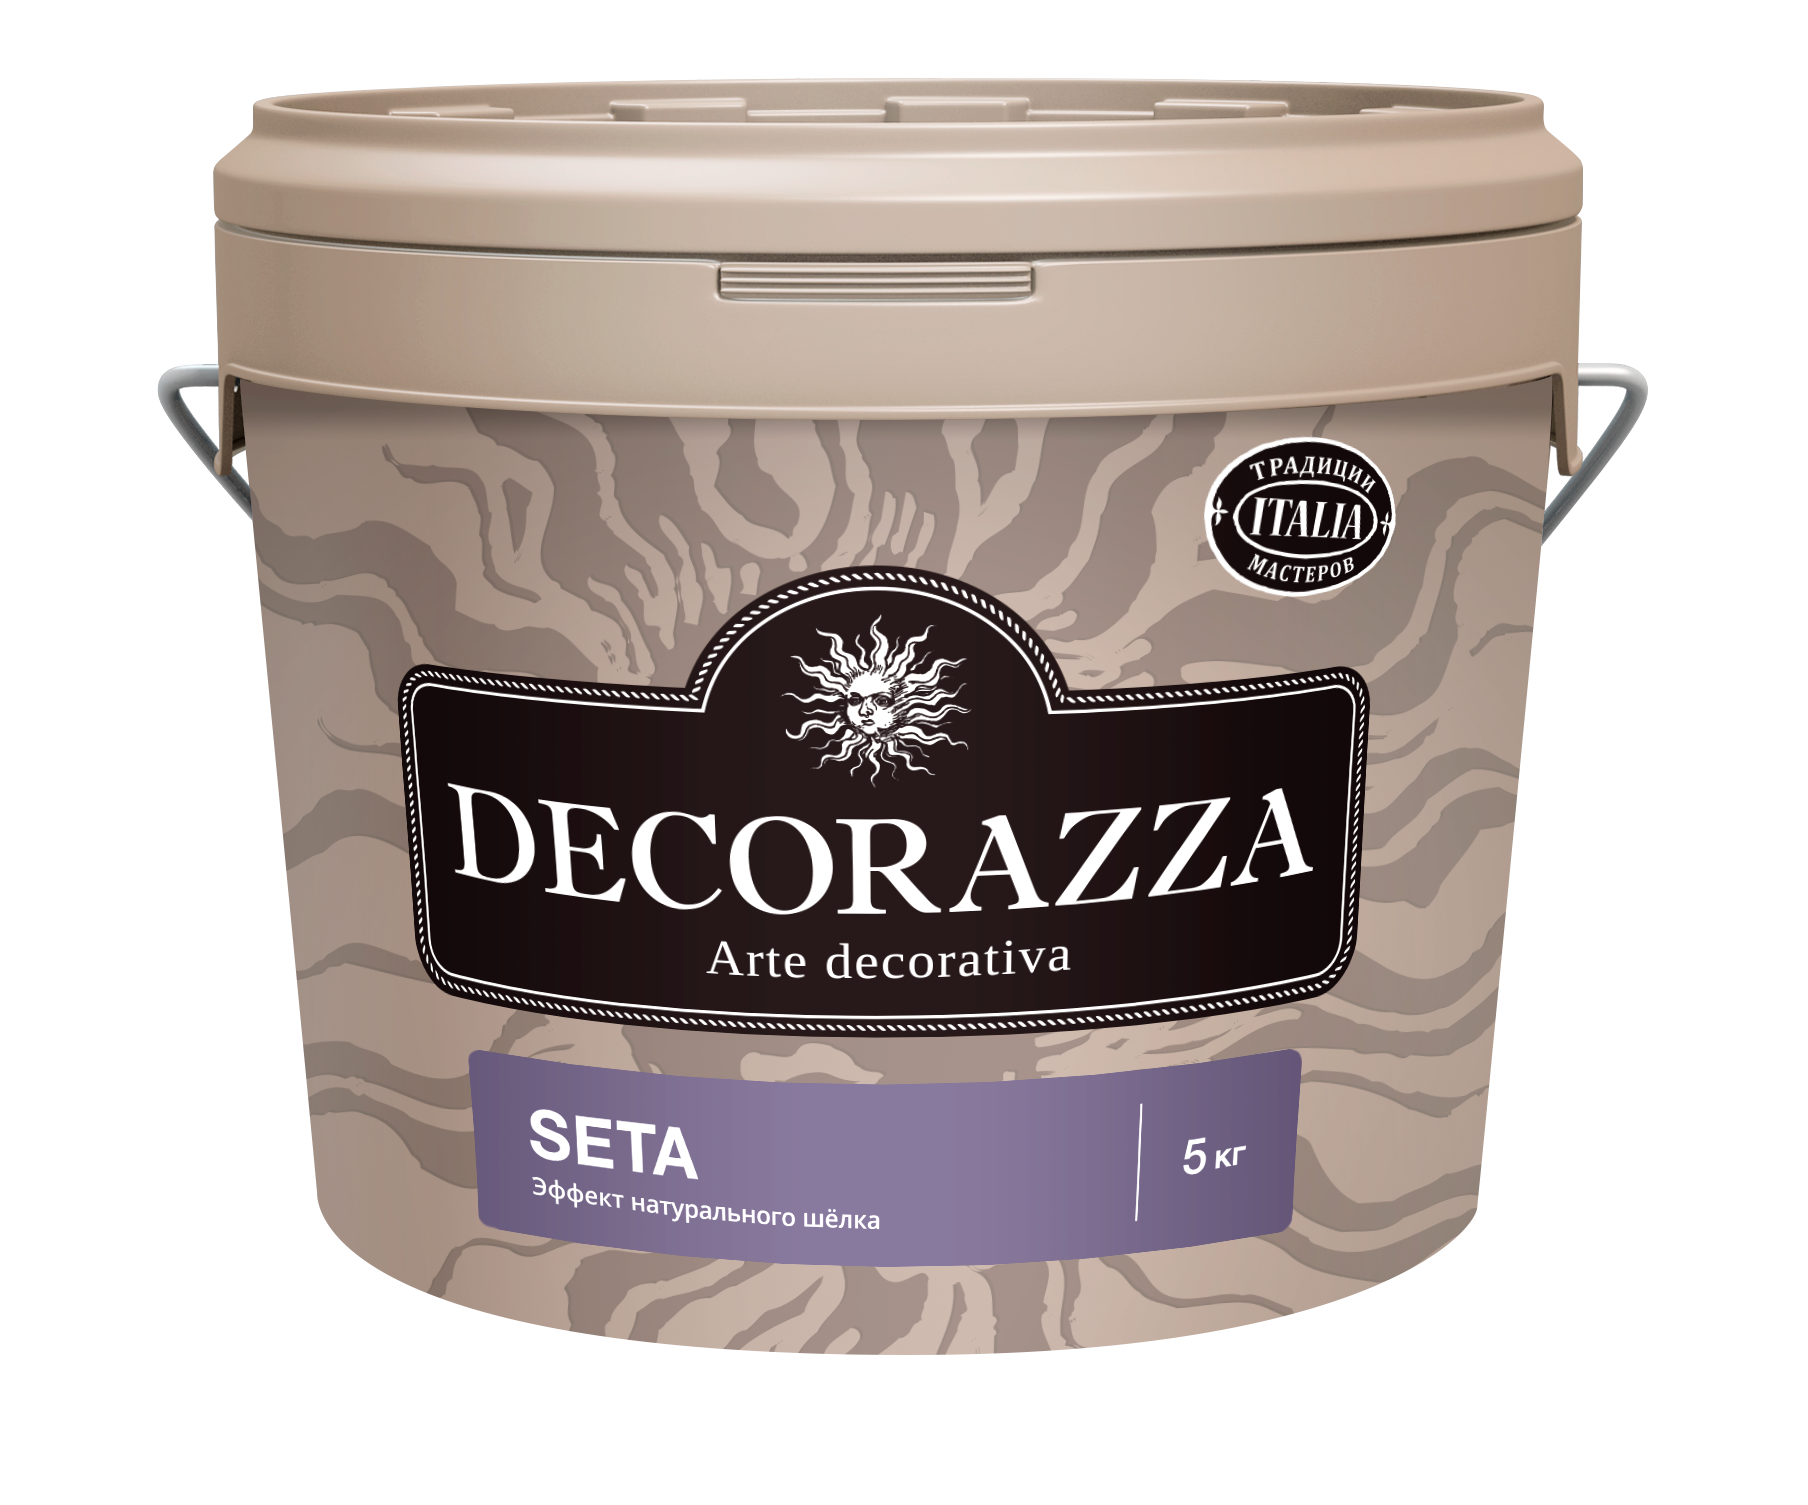 Декоративная штукатурка Decorazza Seta Argento ST 001, серебро, 5 кг краска декоративная decorazza aretino 1 л